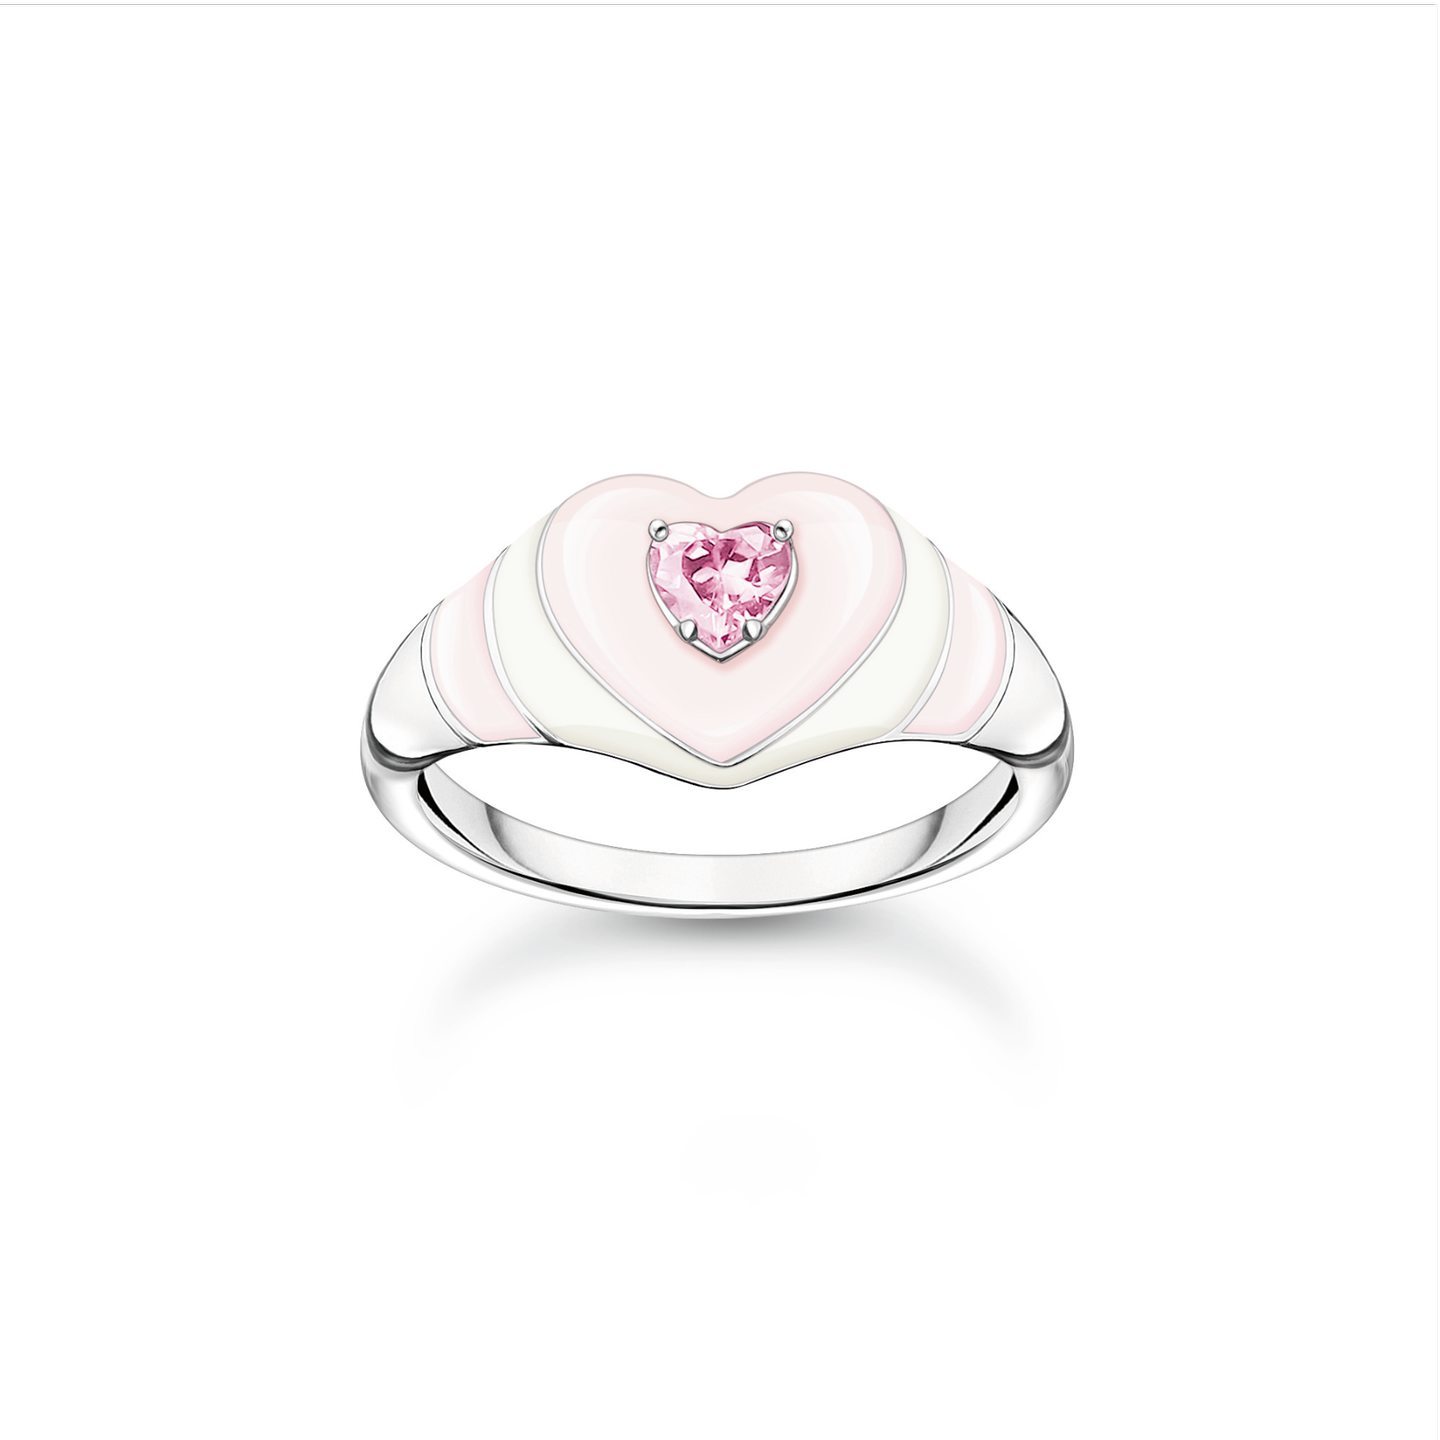 Ein Ring ist ein Symbol von Liebe, Verbundenheit und Einheit und ist damit das perfekte Geschenk für Valentinstag. Dieser Ring der Thomas Sabo Valentinstag-Kollektion lässt unsere Herzen höher schlagen! Für 98 Euro erhältlich.